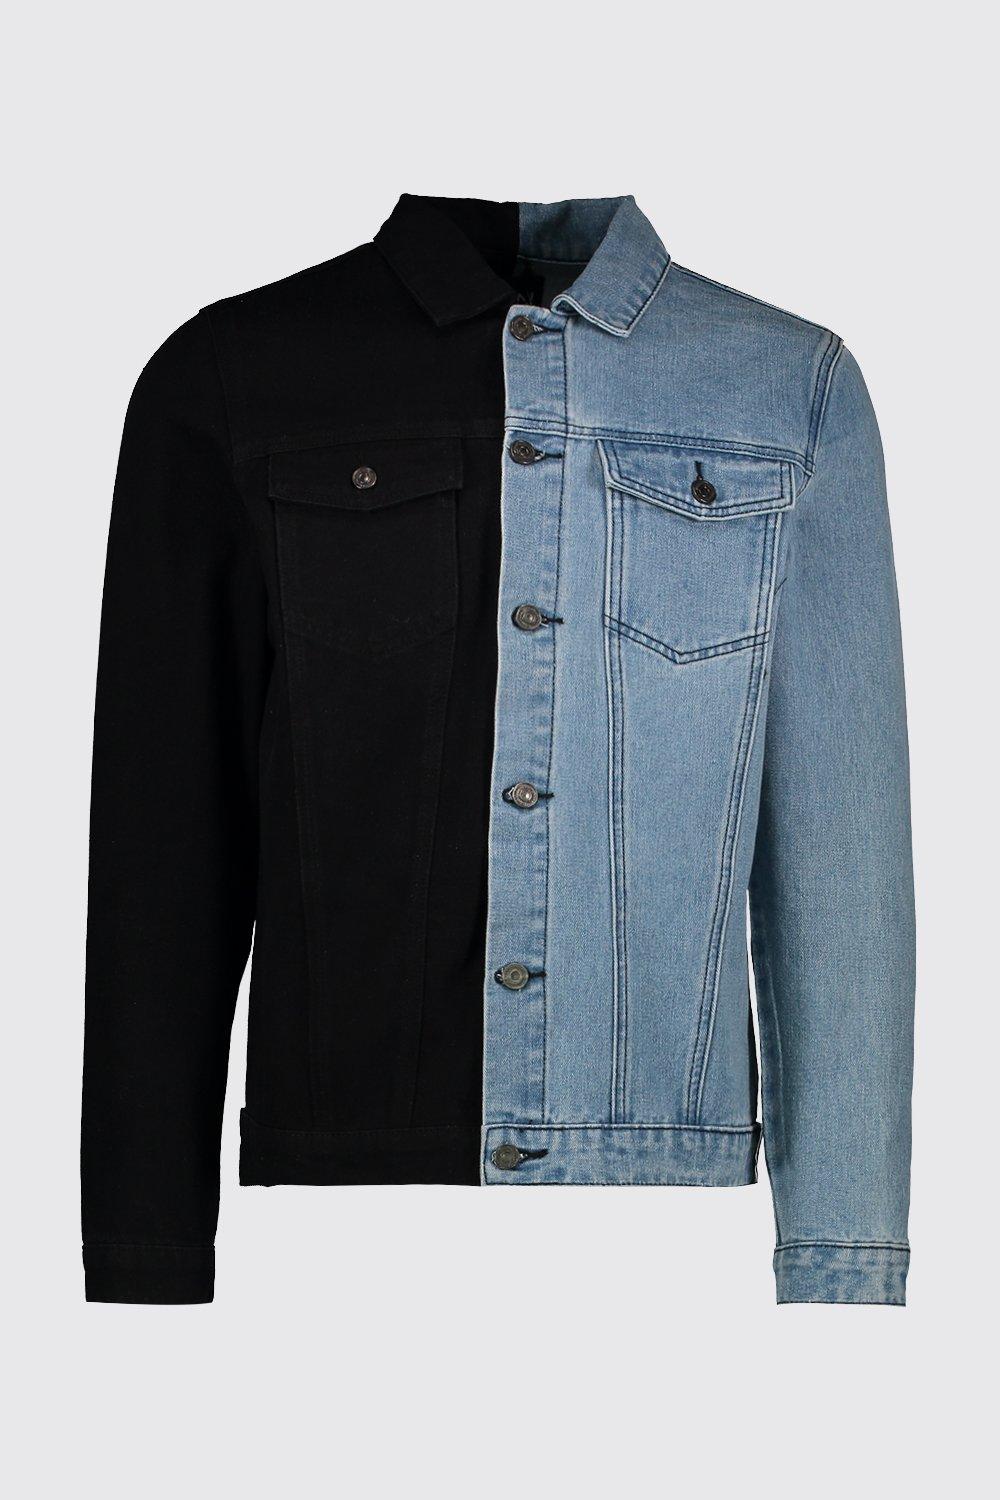 black blue jean jacket